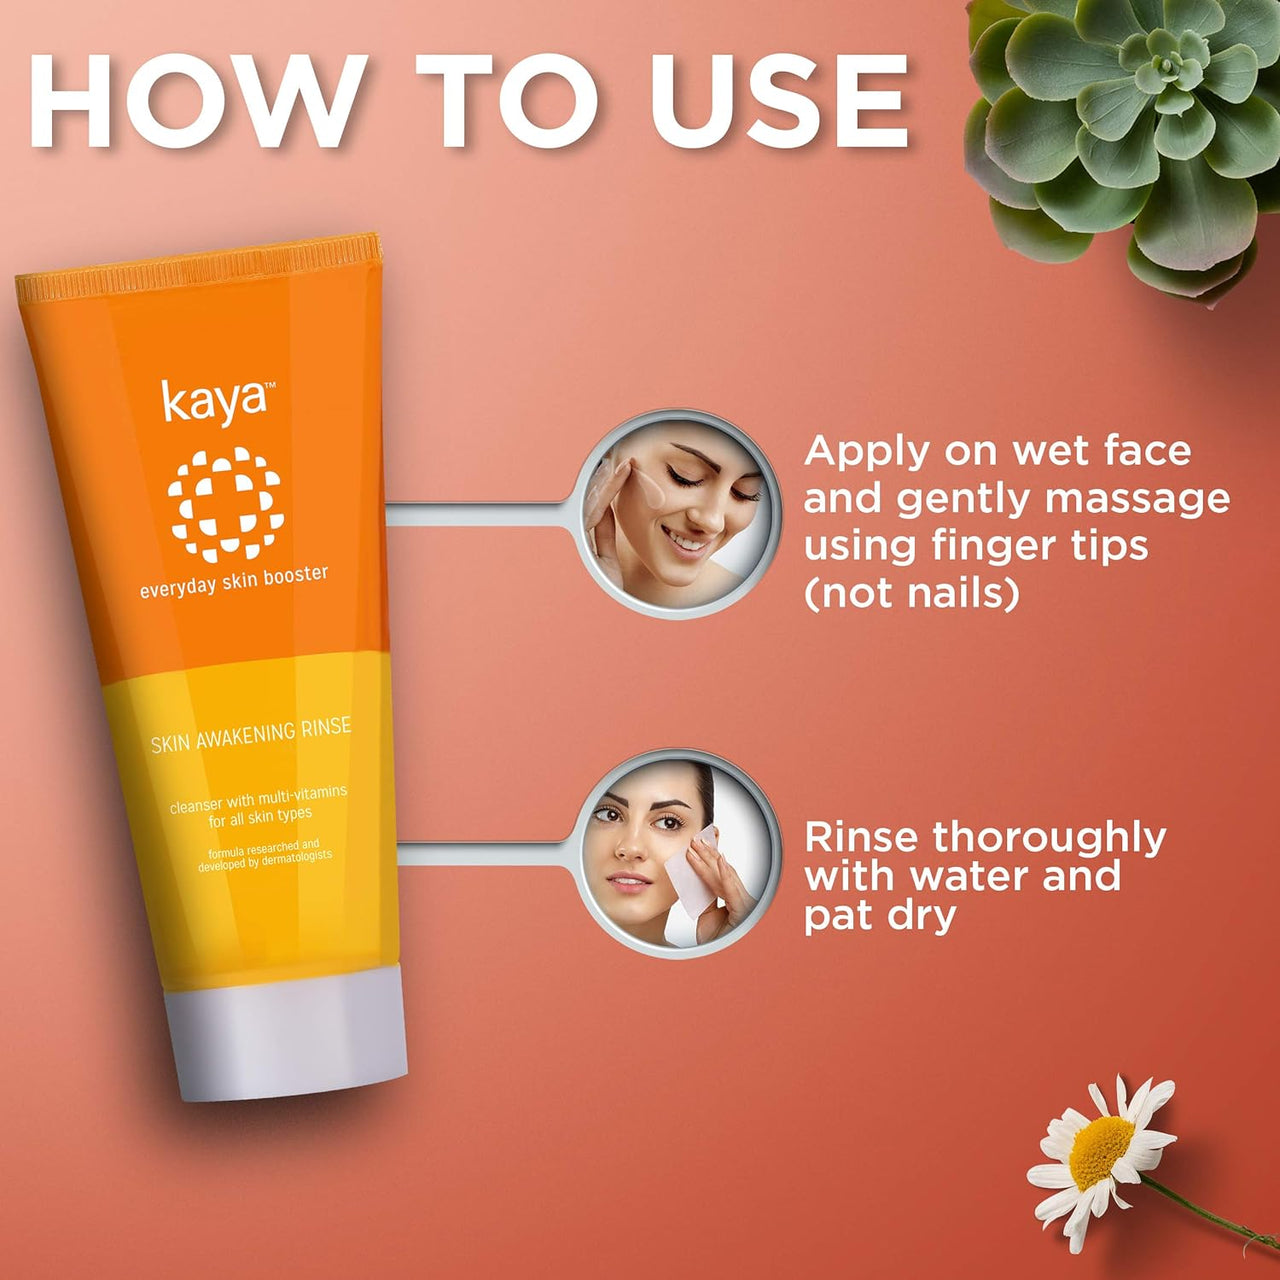 Kaya Skin Awakening Rinse Face Wash with Niacinamide, Vitamin C, A & E for All Skin Types - Distacart